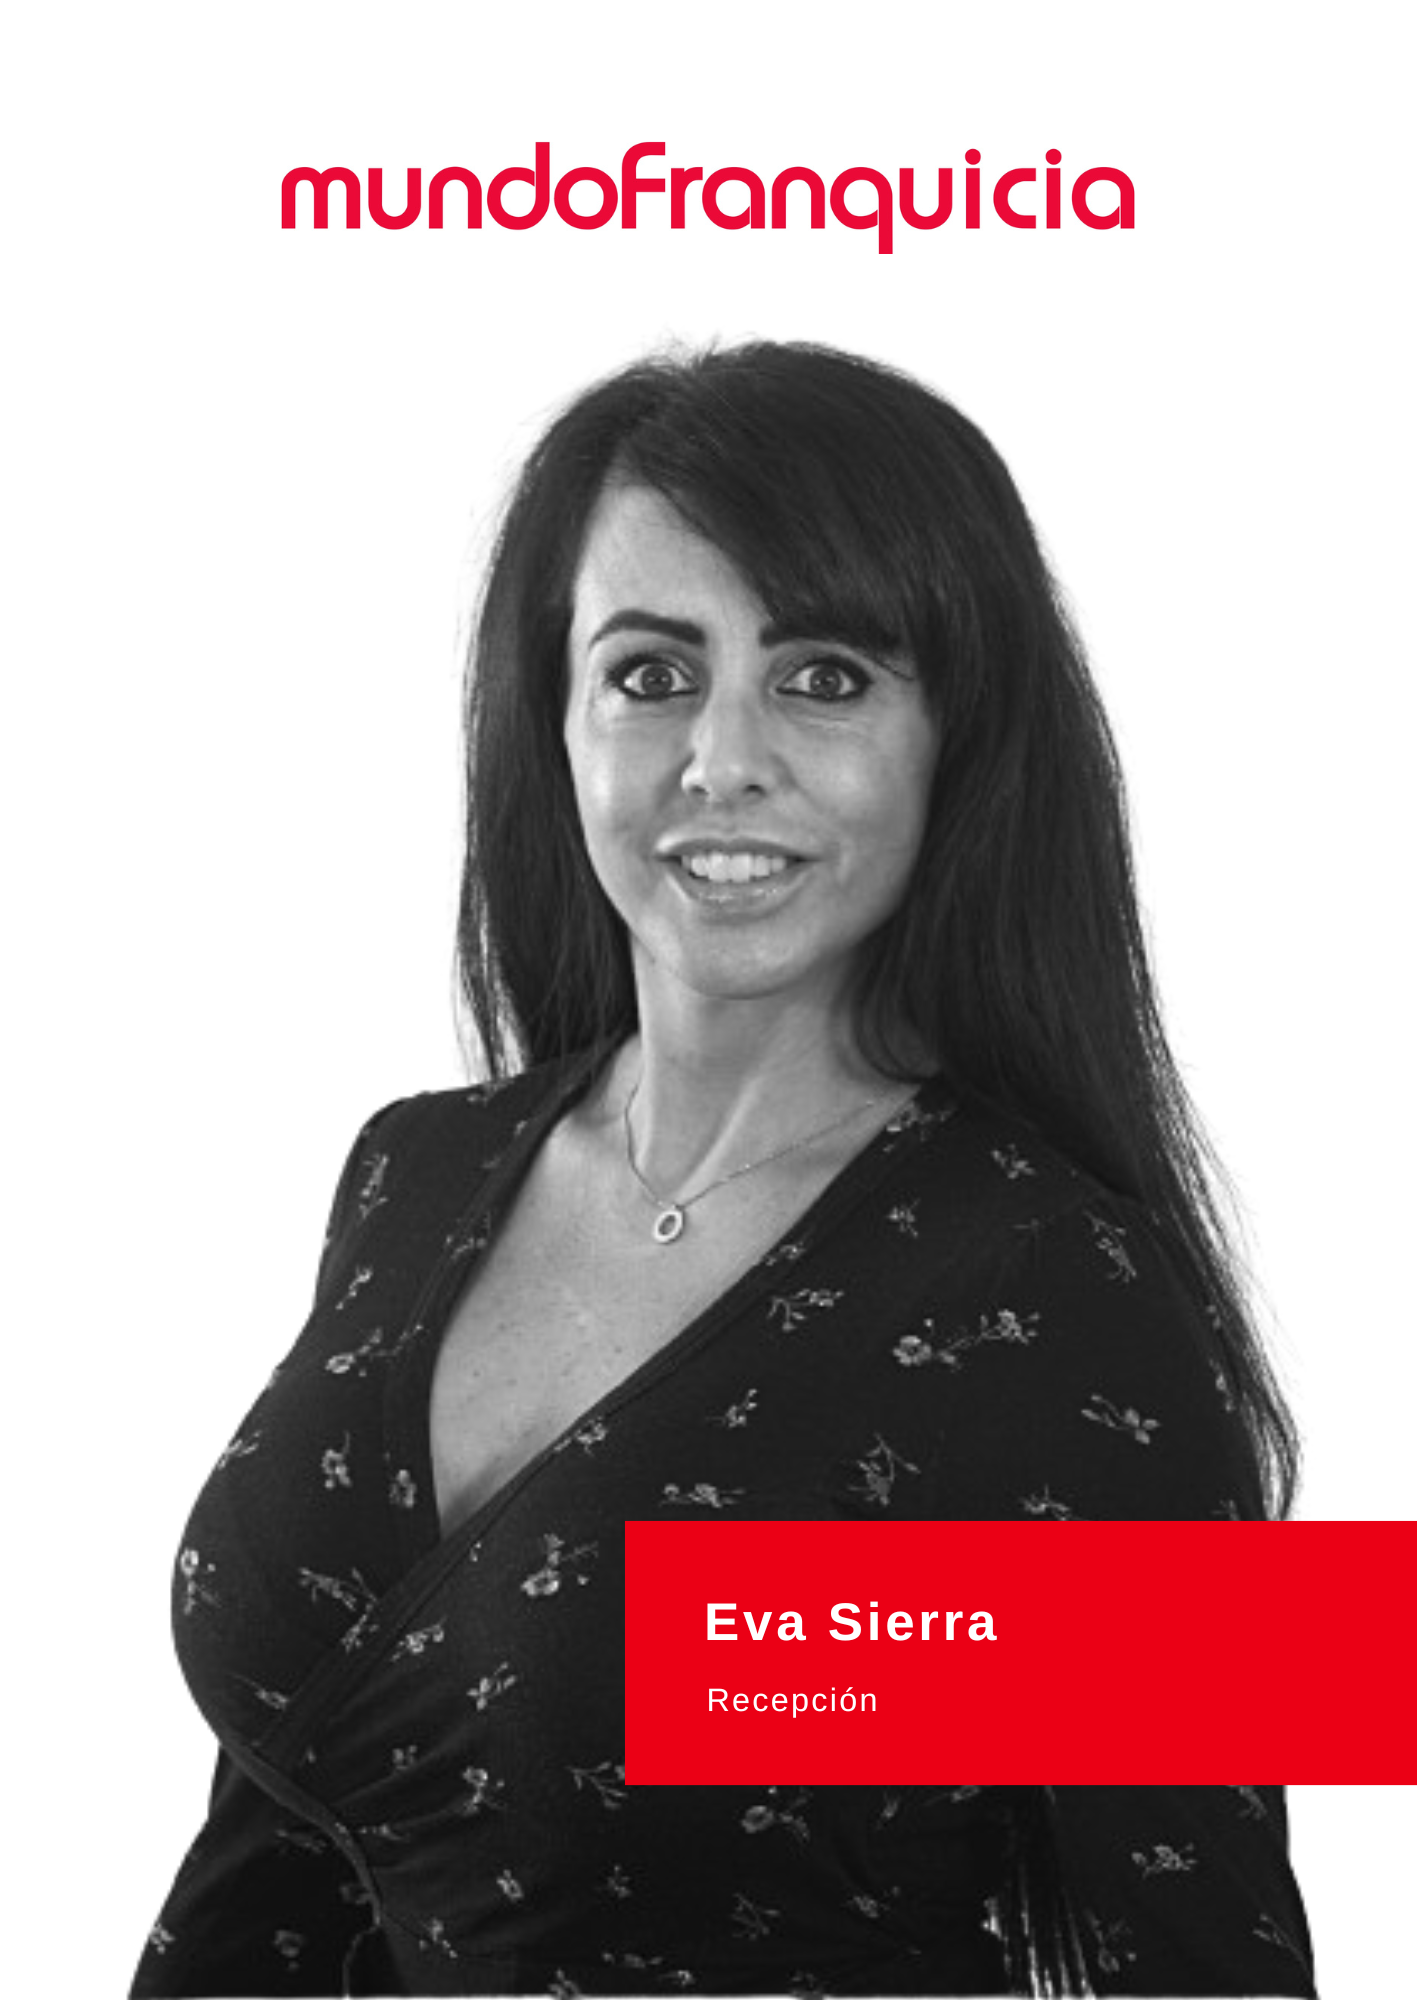 Eva Sierra